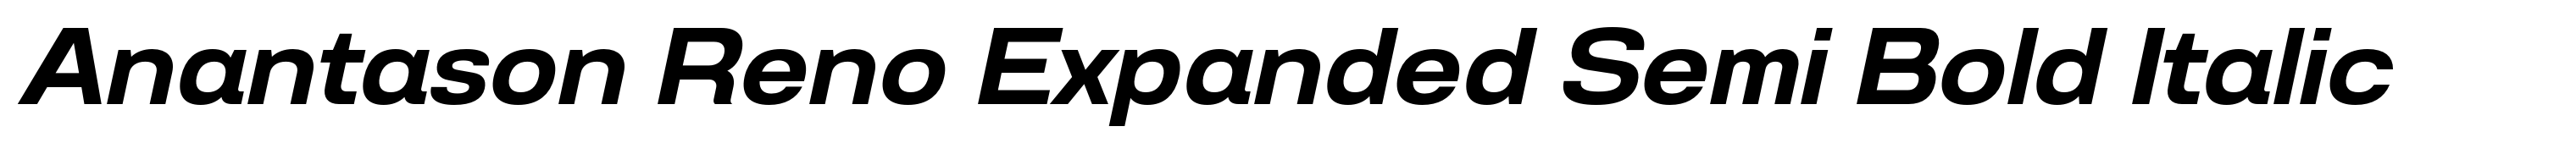 Anantason Reno Expanded Semi Bold Italic